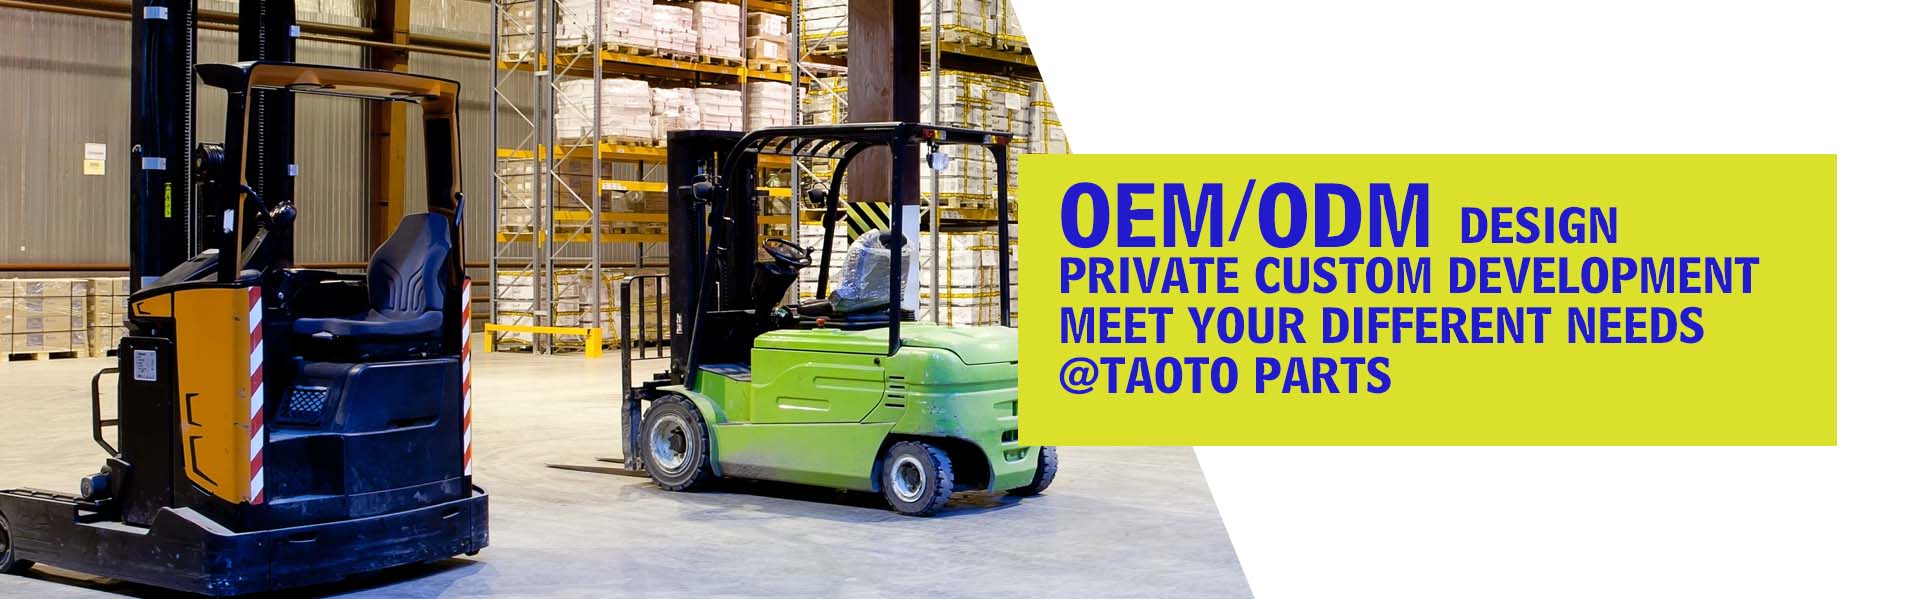 Forklift parts
OEM/ODM design
Professional forklift parts production and sales